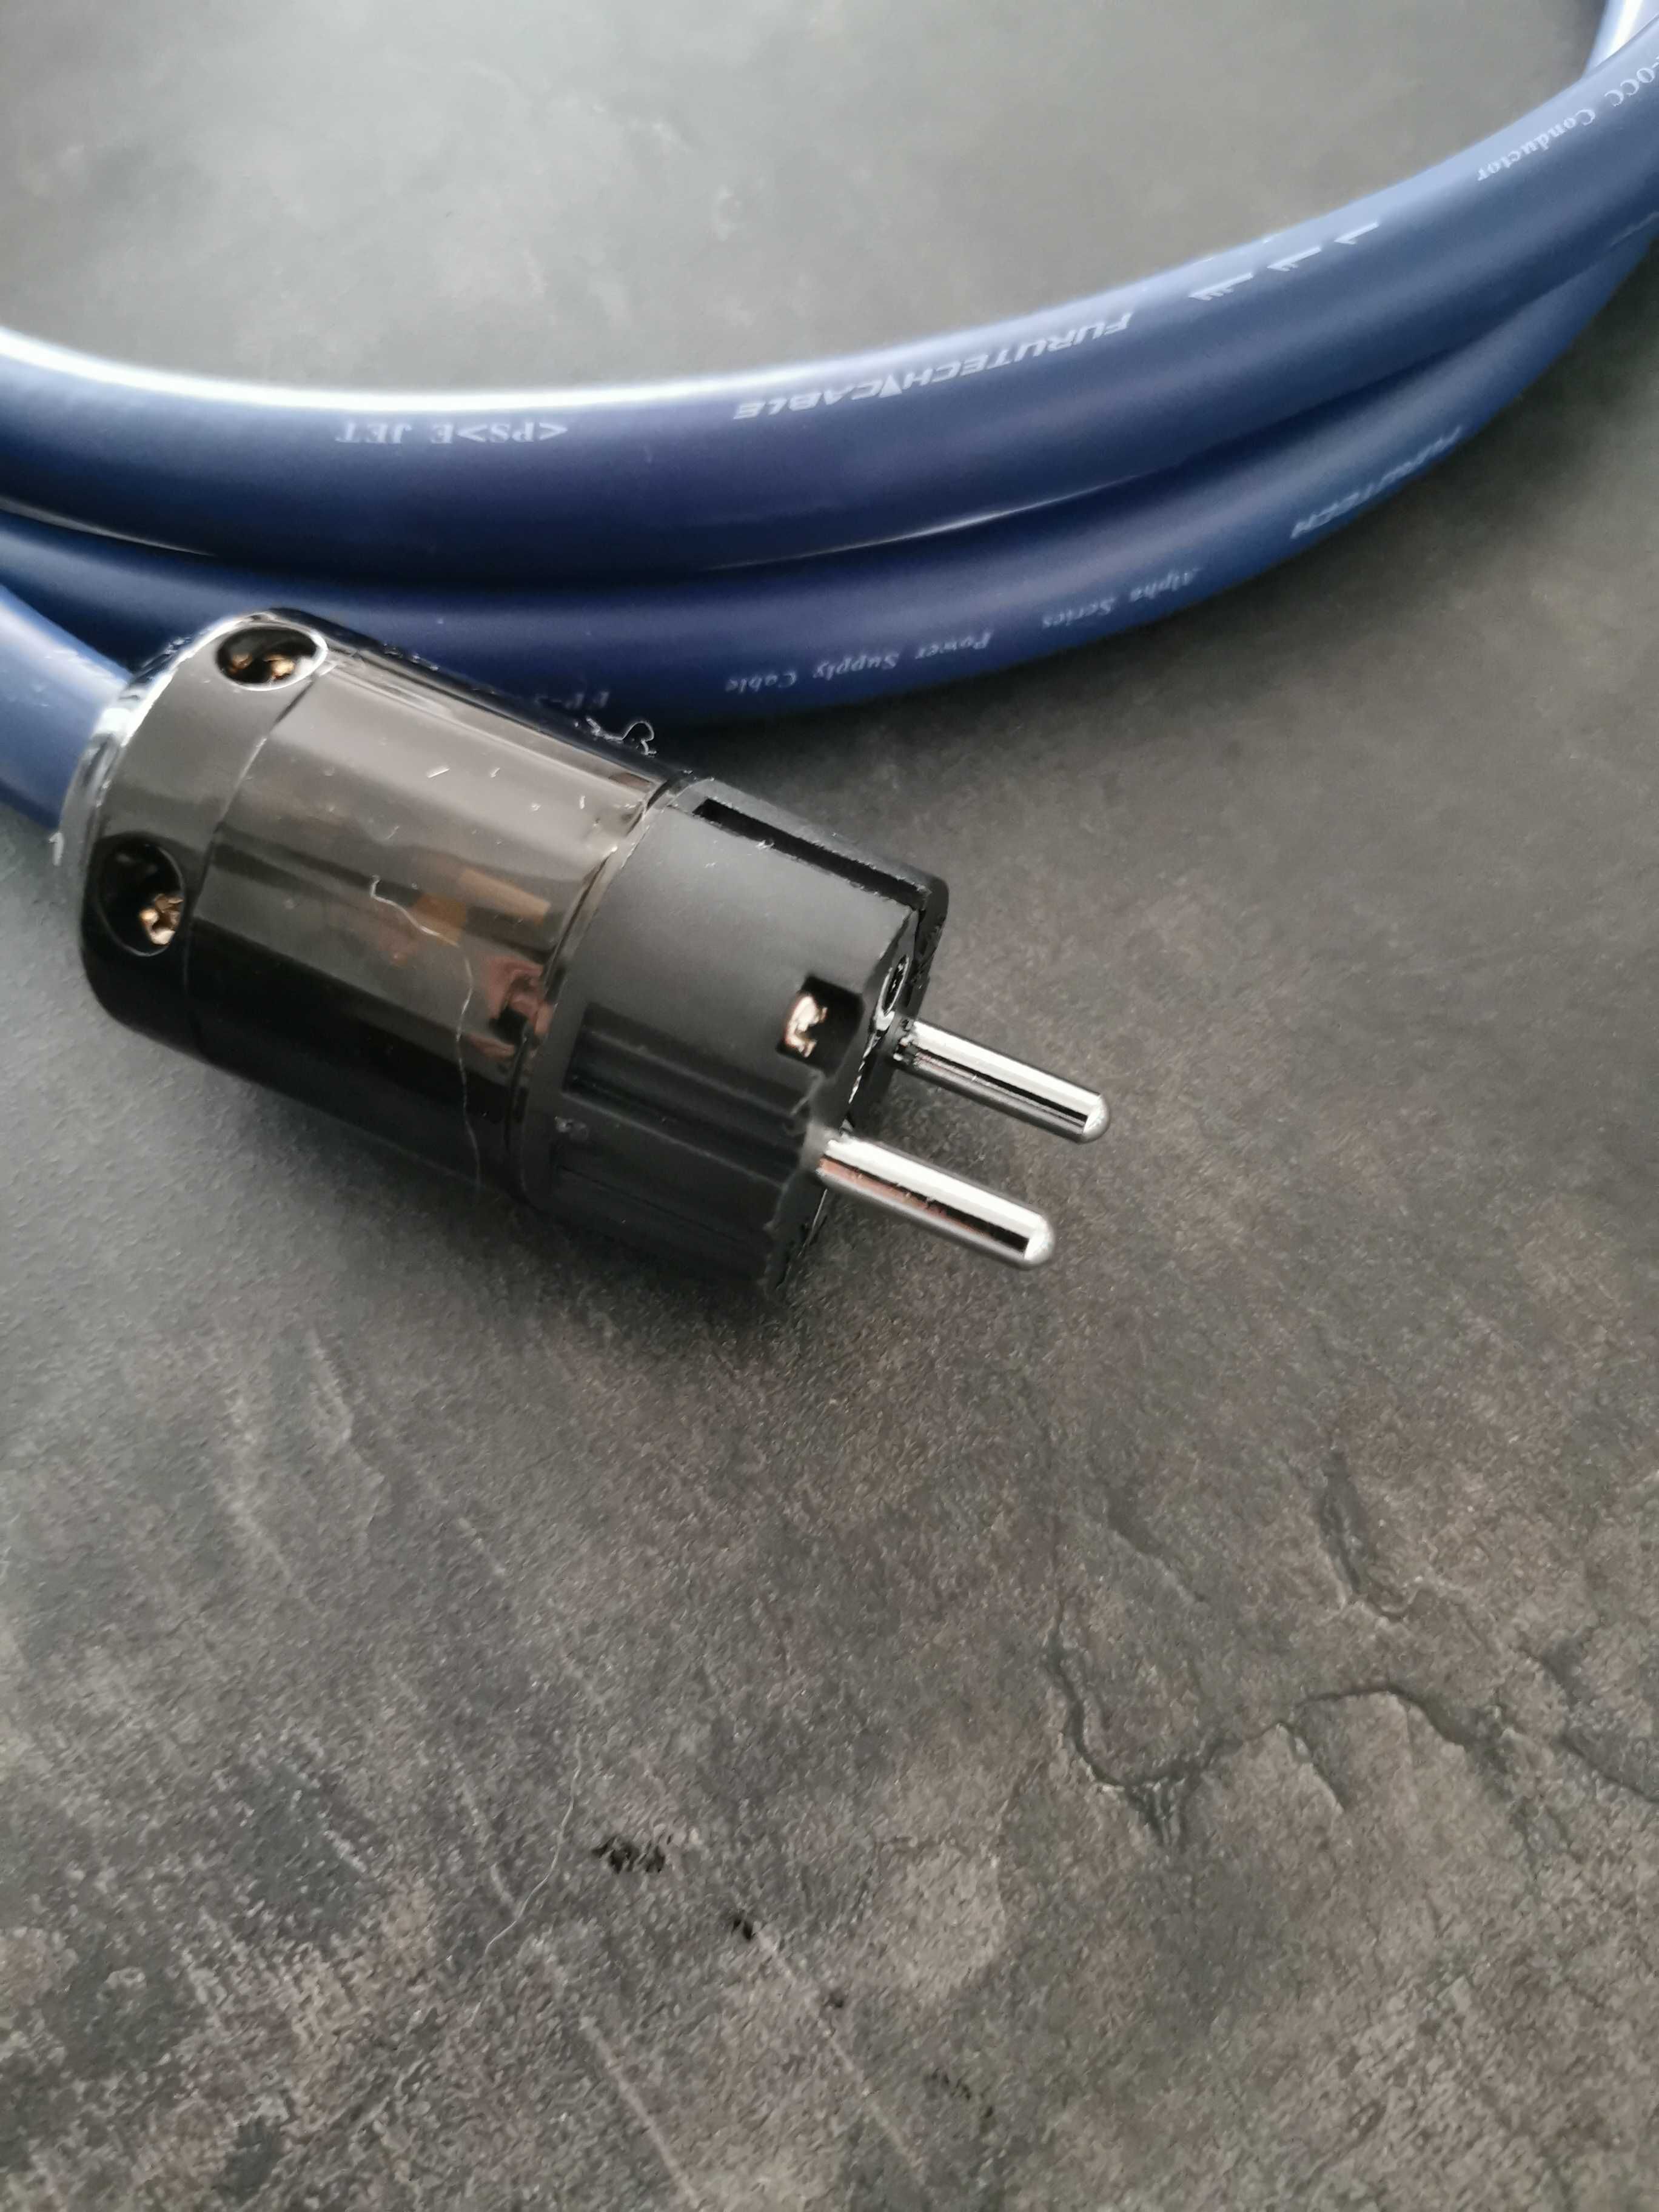 Kabel zasilający Furutech FP-3TS20, 2m konfekcja miedź rodowana